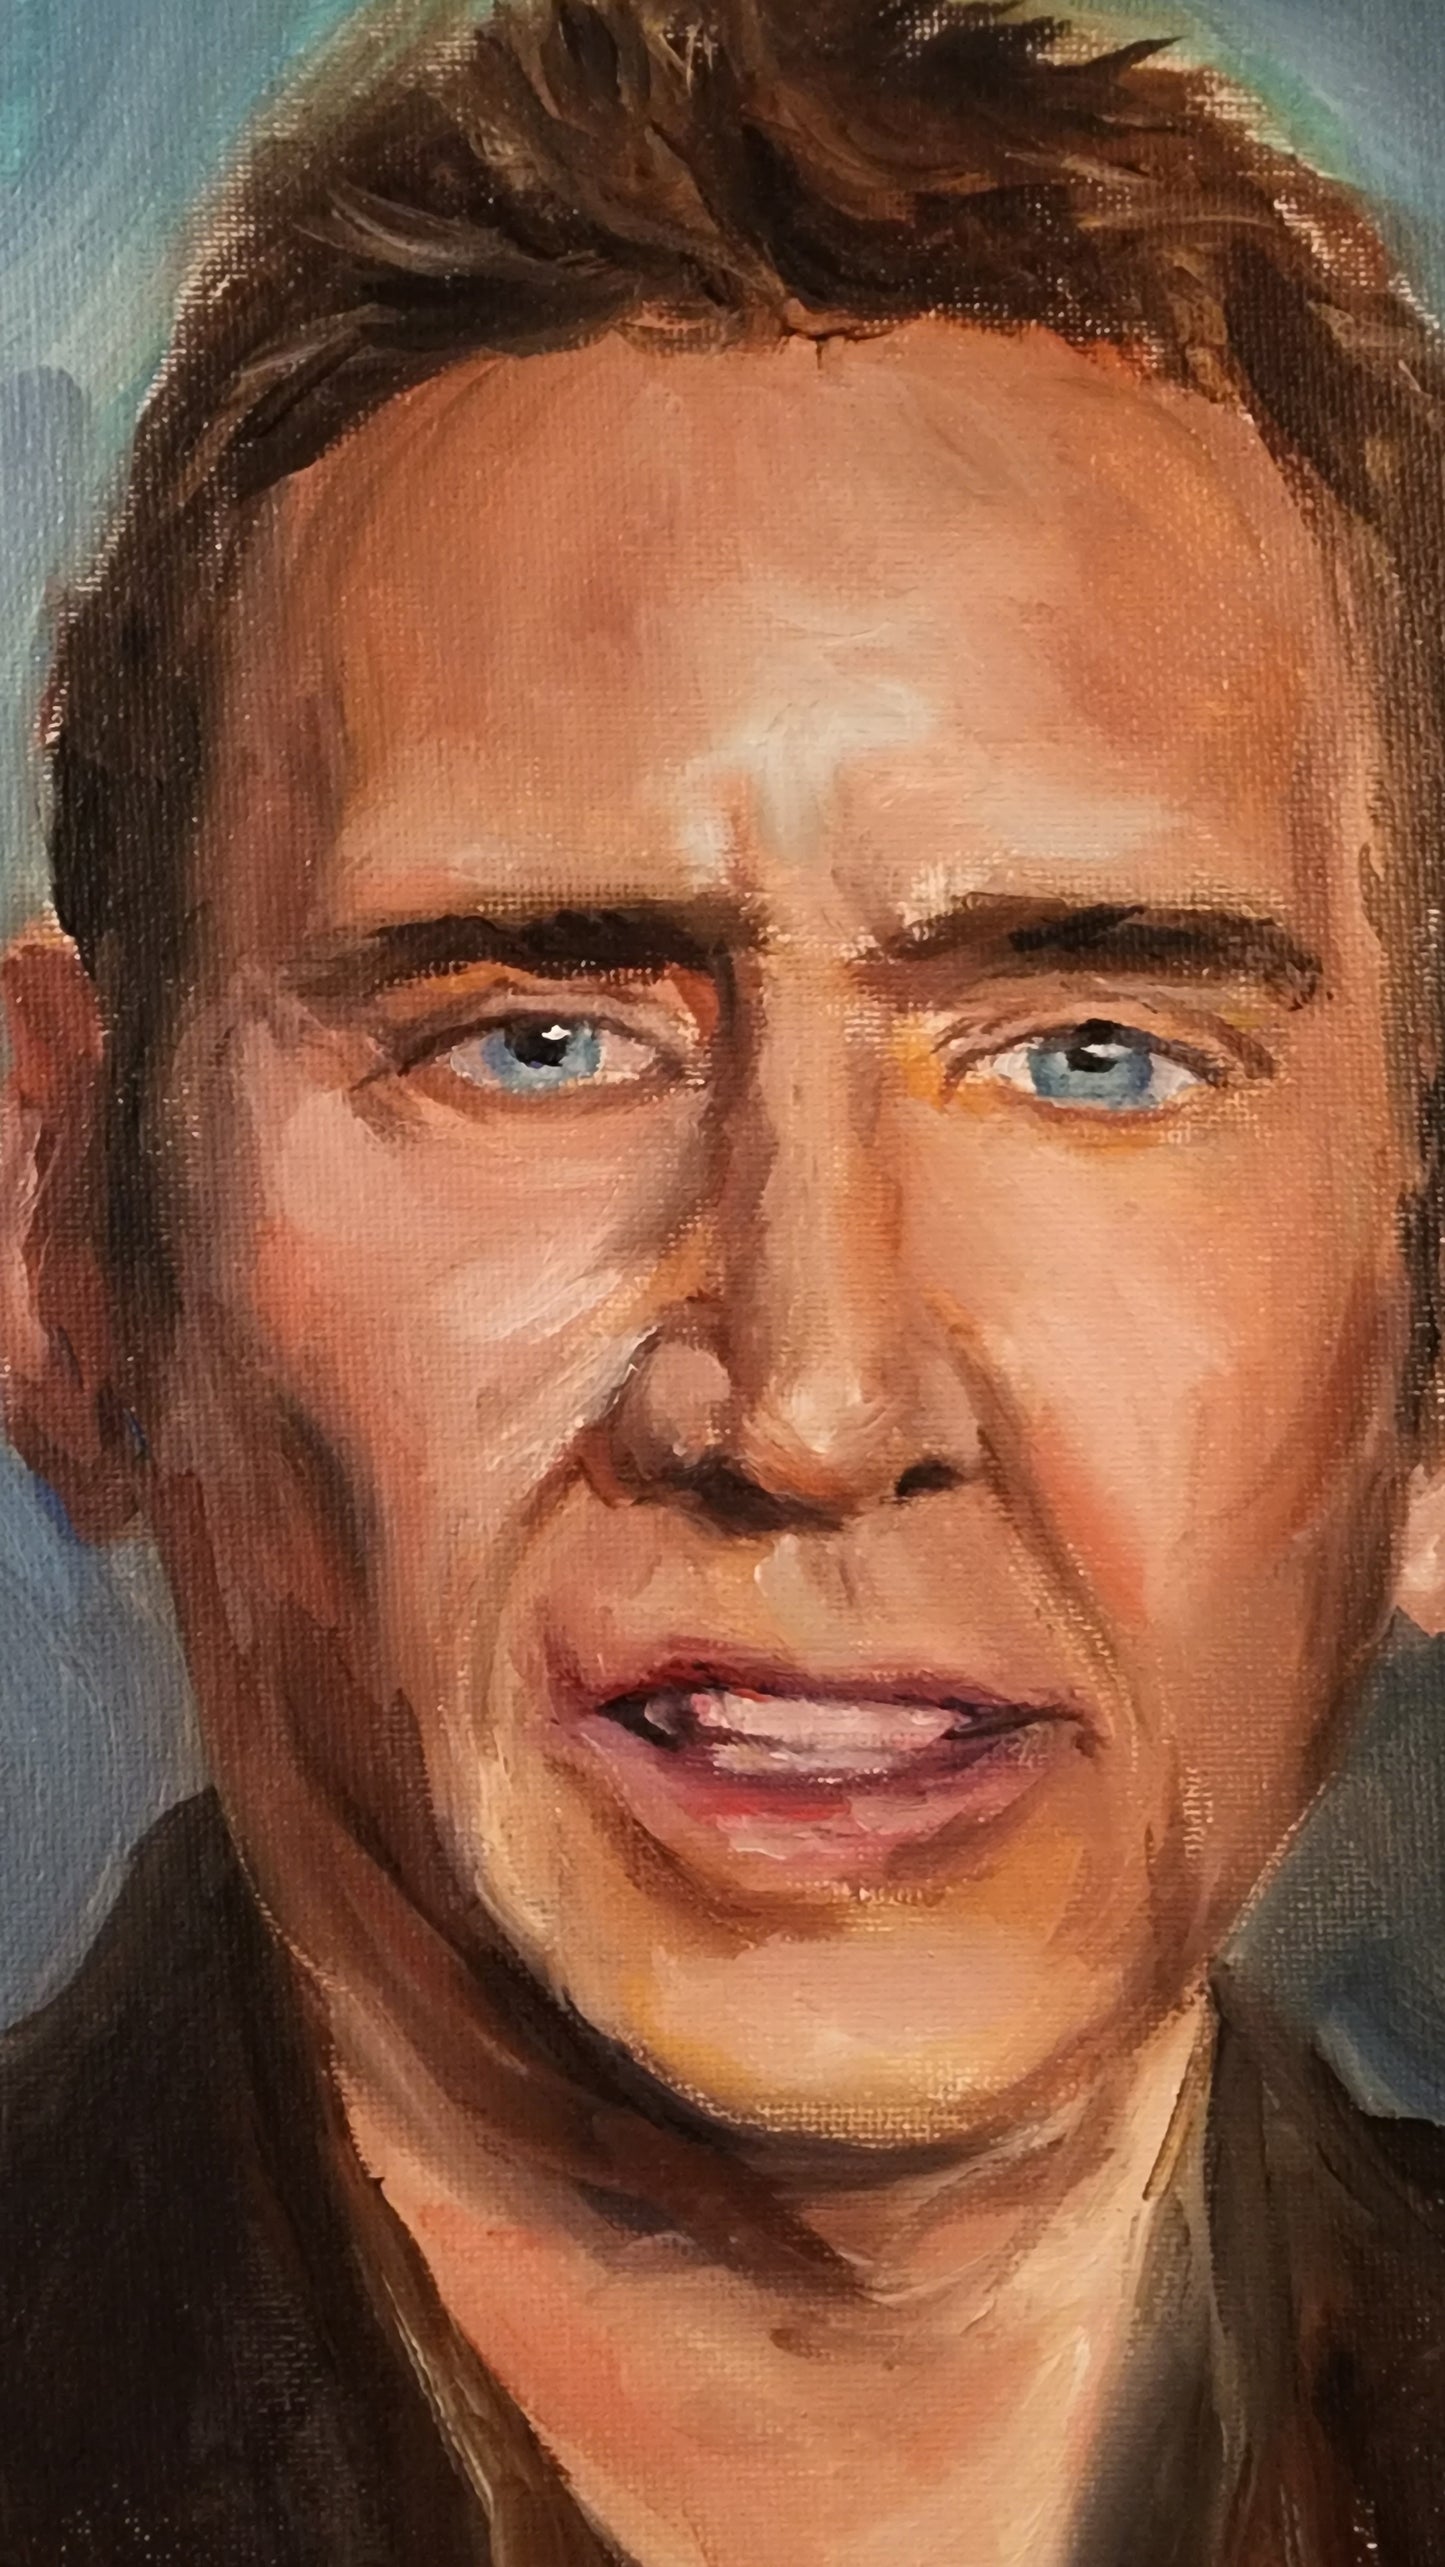 Nicholas Cage Portrait